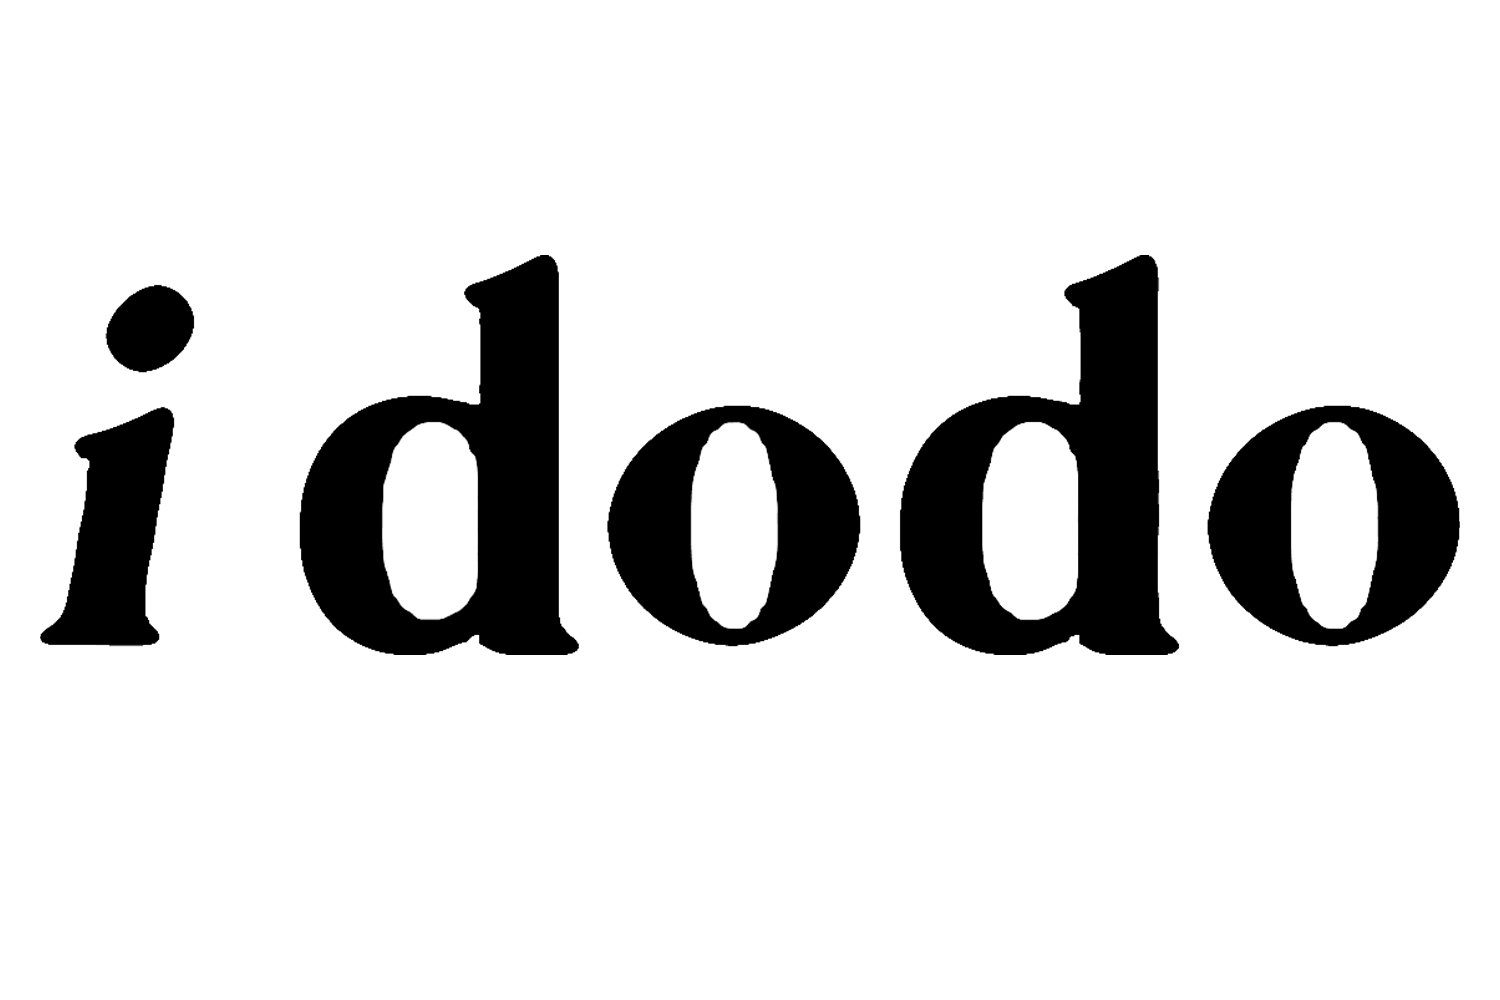 i dodo